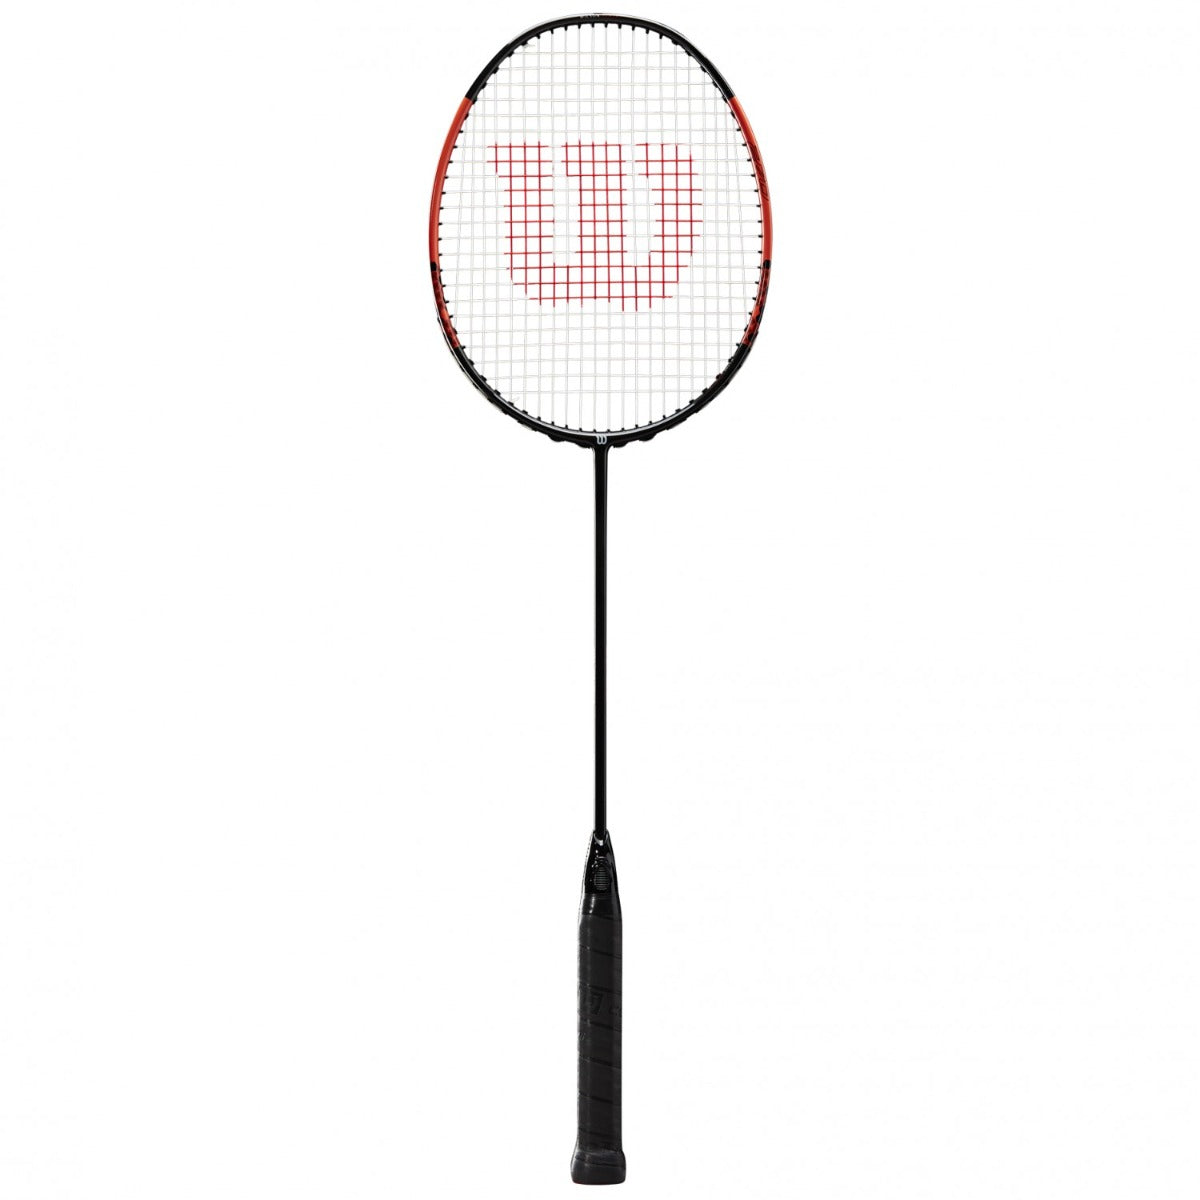 Wilson Blaze 270 Badminton Racket